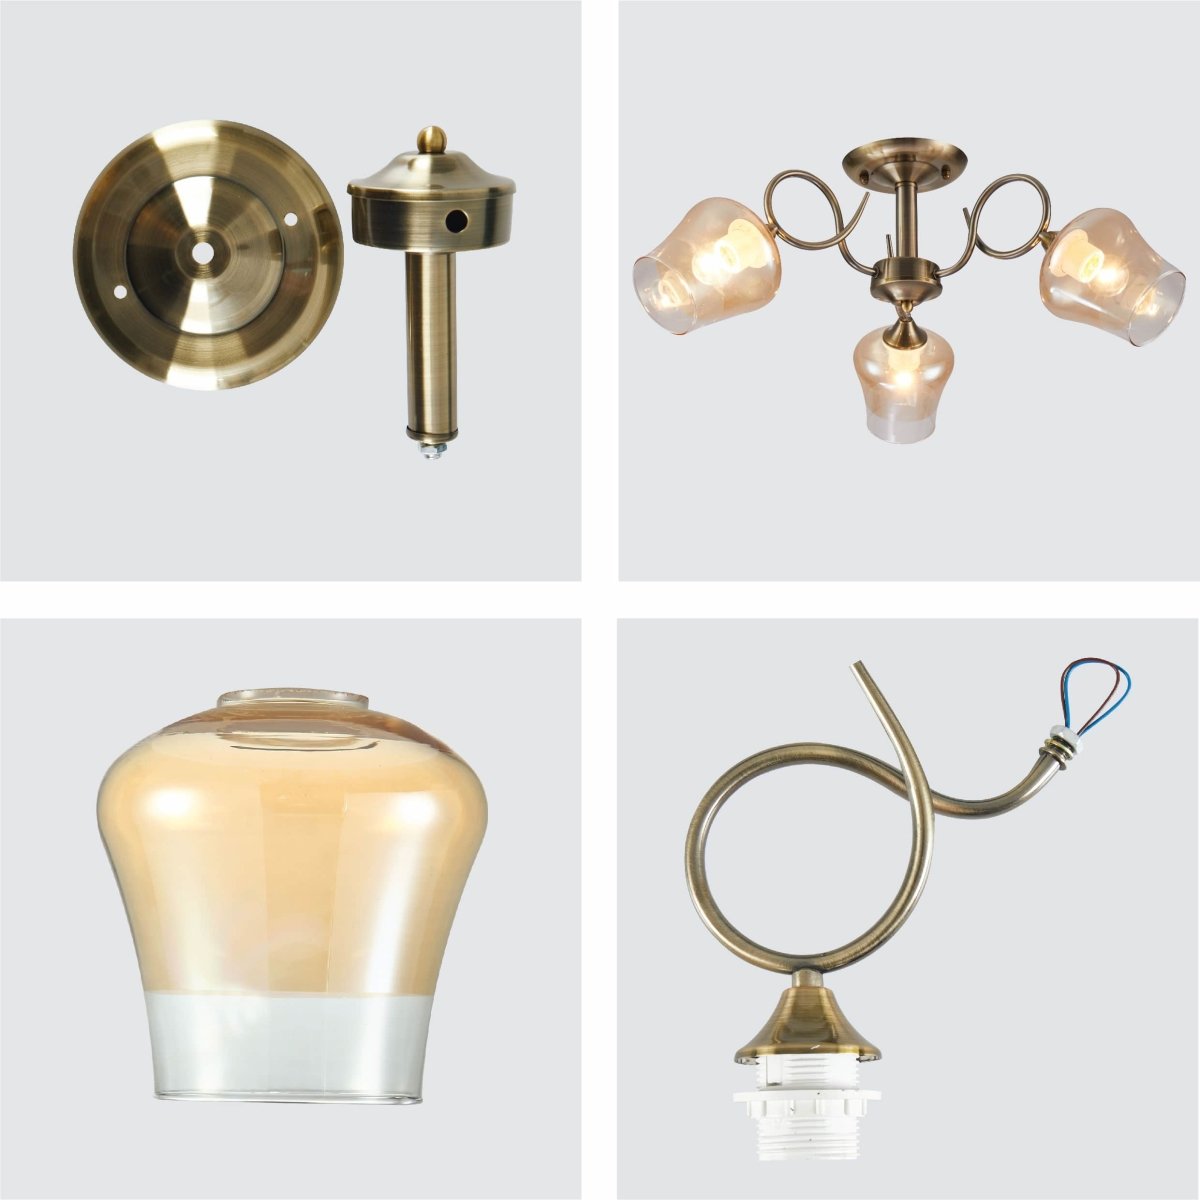 Details of Amber Bell Glass Antique Brass Metal Semi Flush Ceiling Light | TEKLED 159-17122